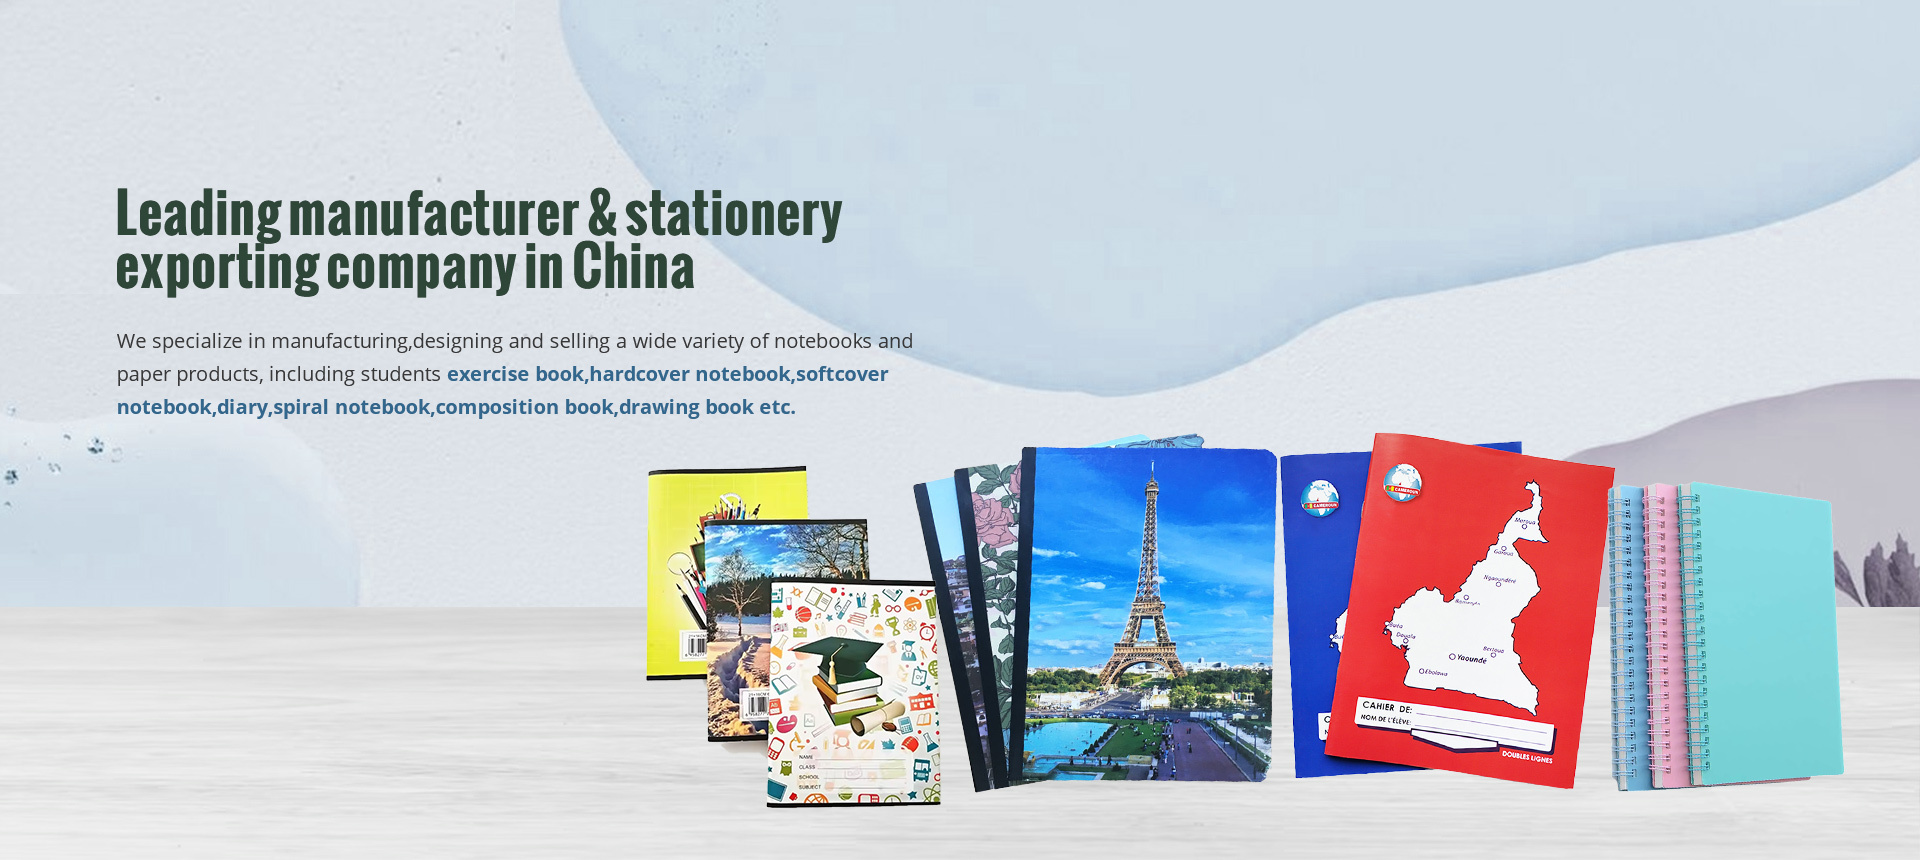 Hunan Hope Mints Stationery Co., Ltd.